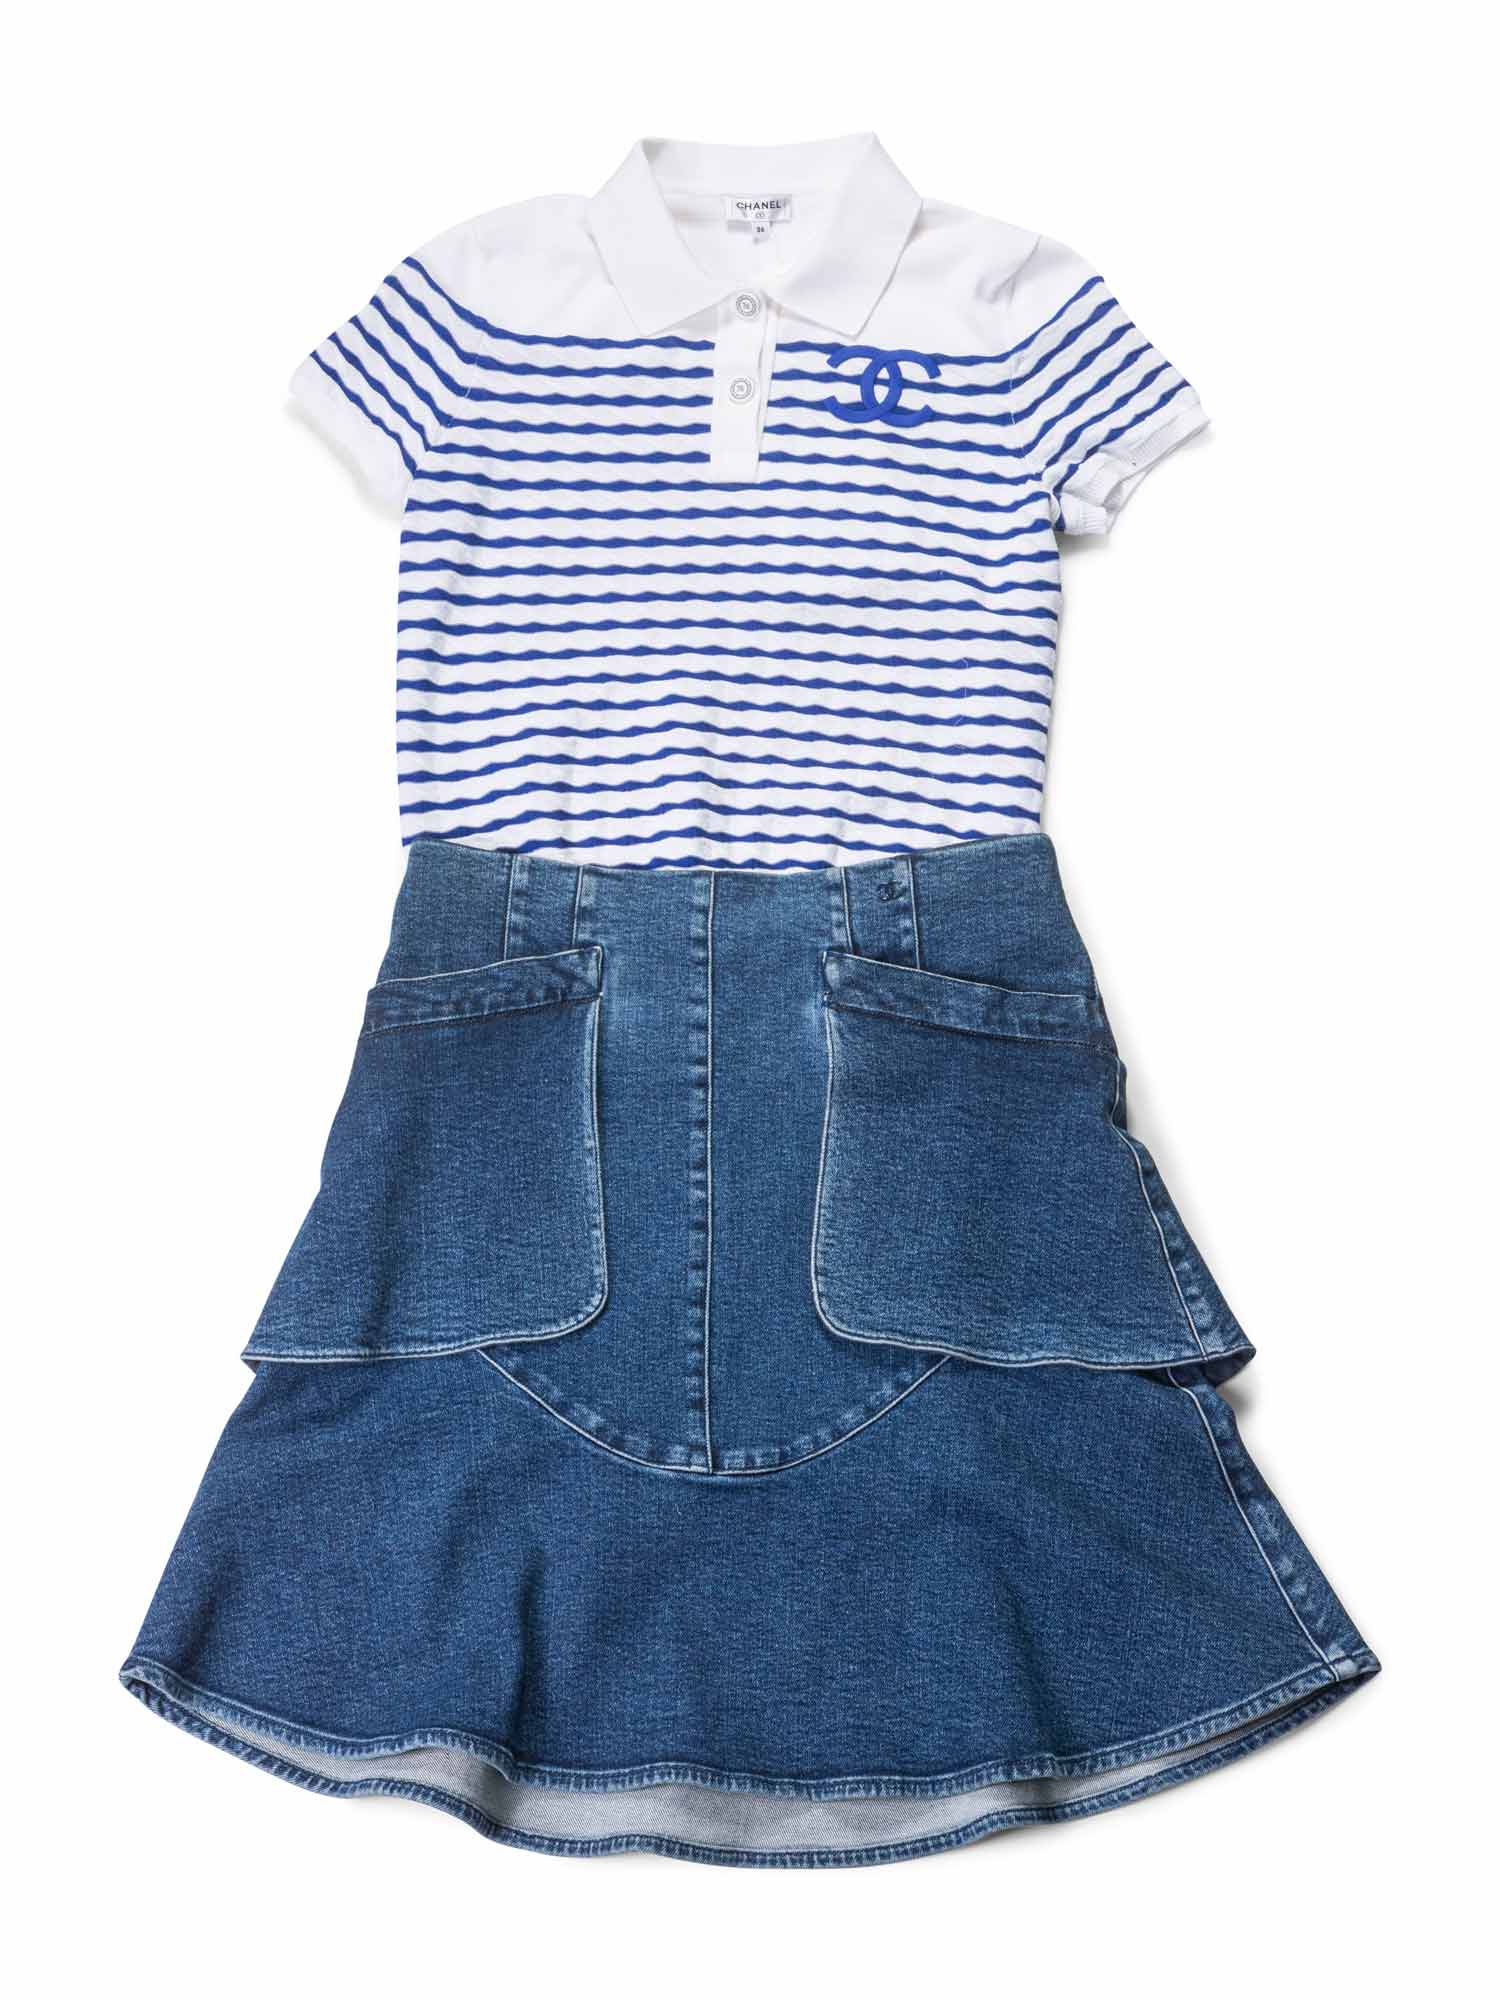 CHANEL Denim CC Logo Midi Skirt Blue-designer resale